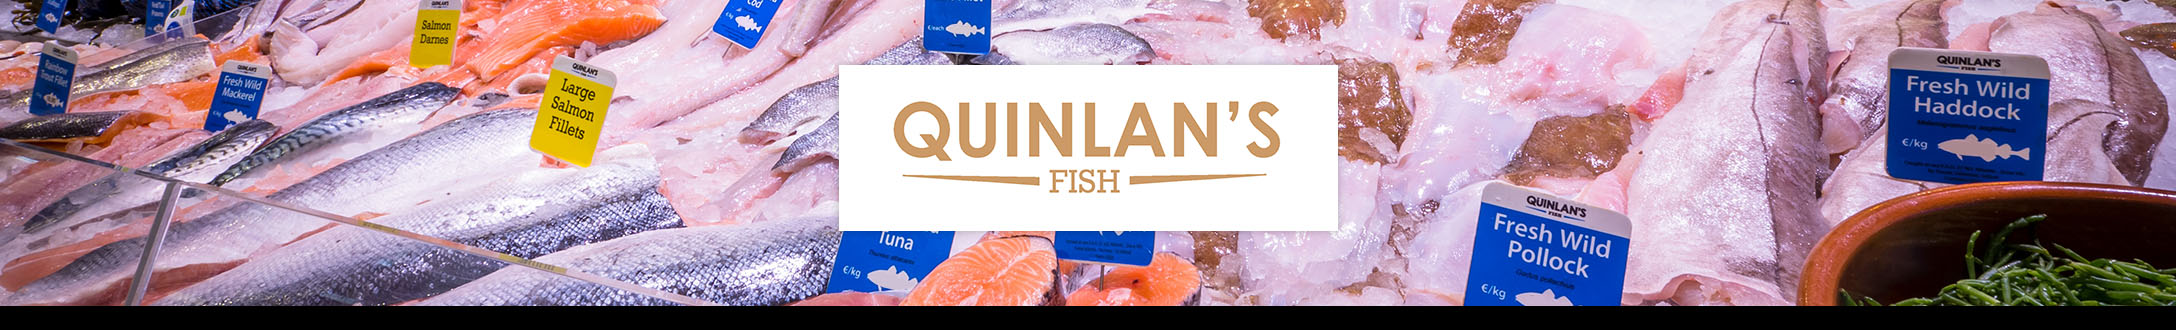 Quinlan's Fish